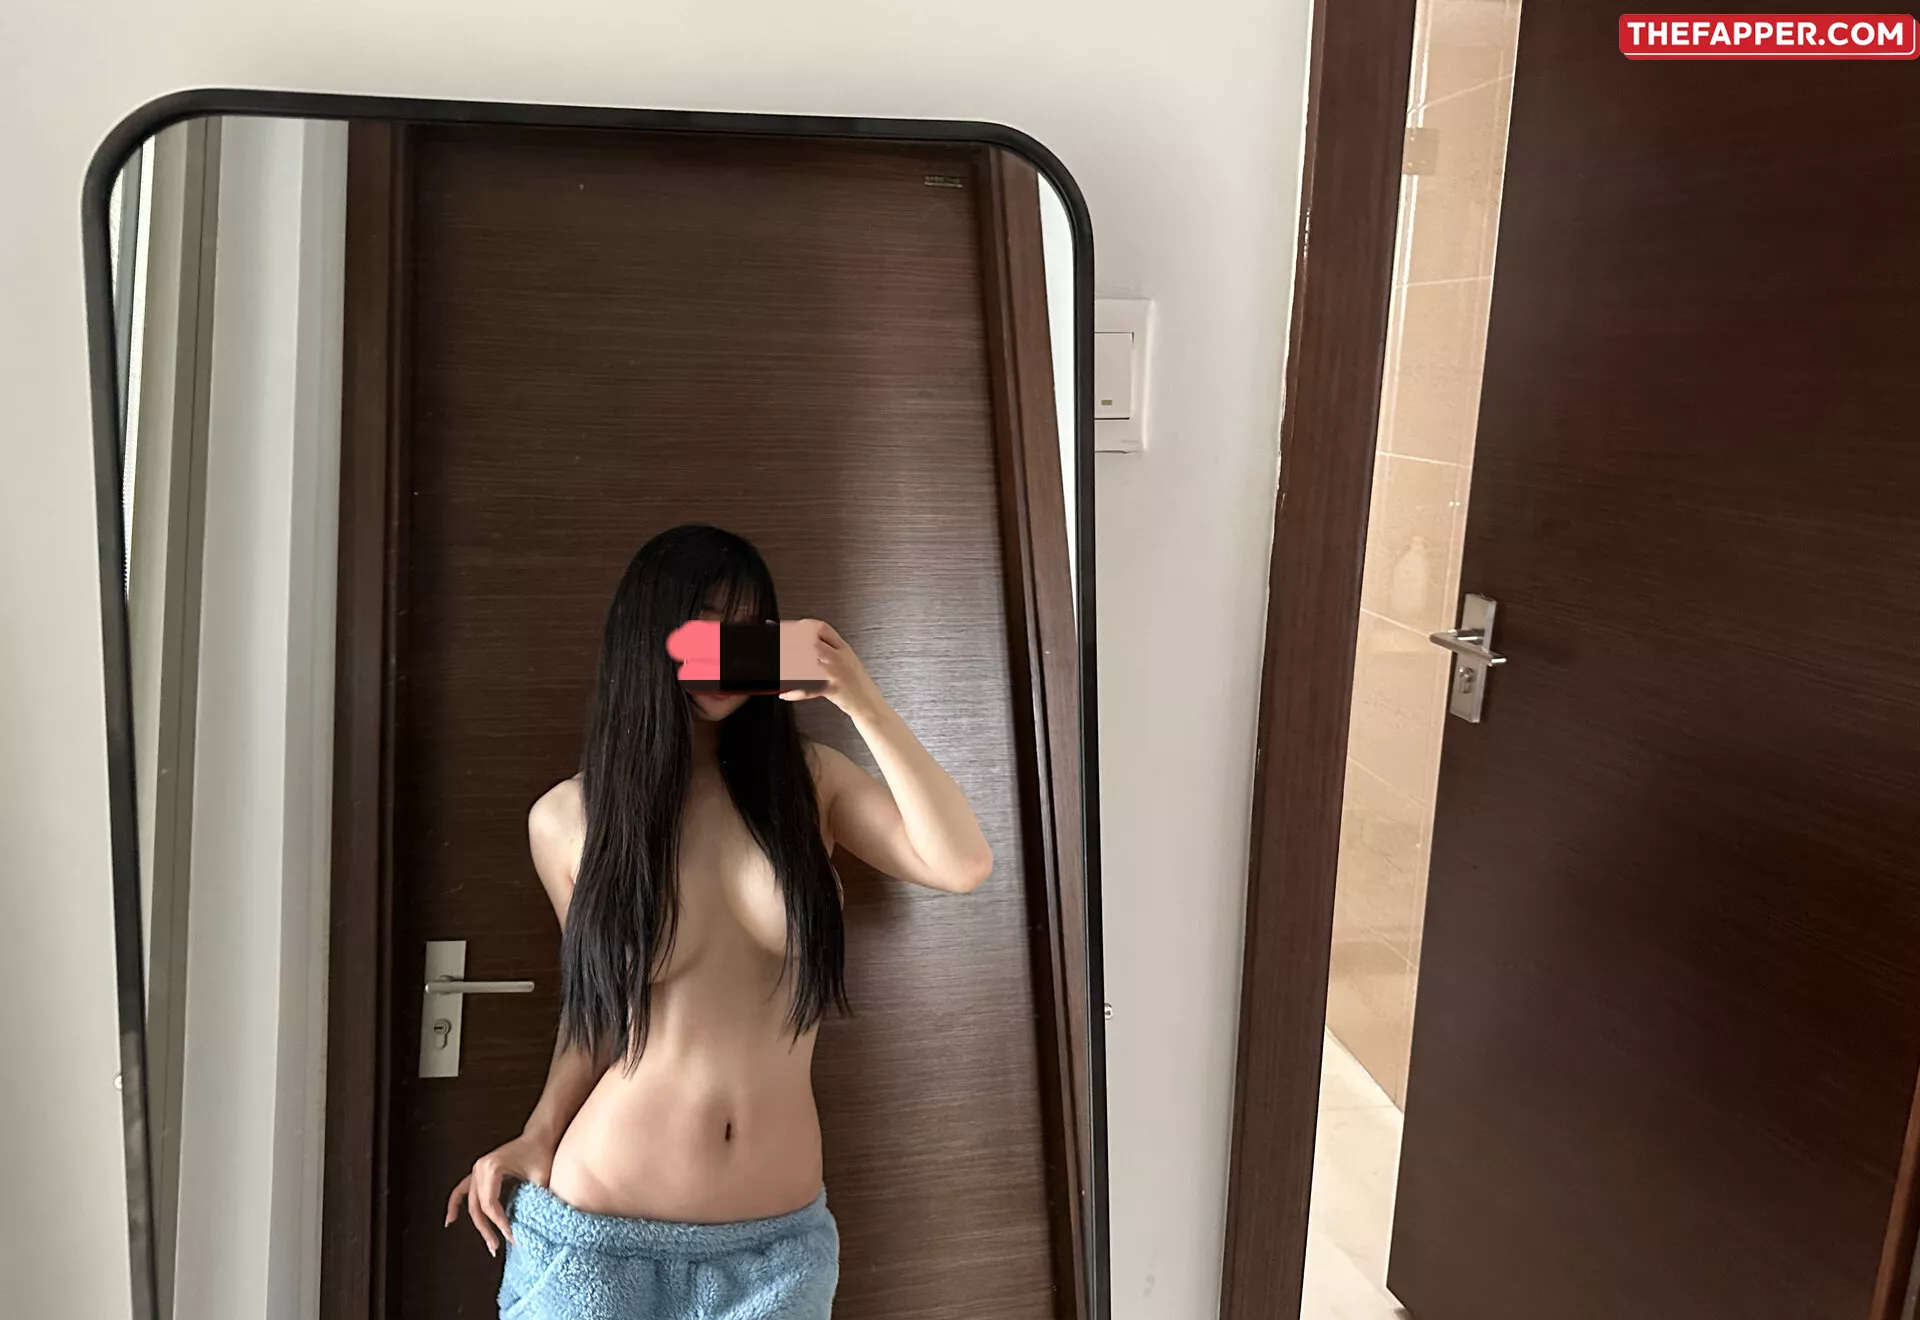 Aninnyan  Onlyfans Leaked Nude Image #ekU5eq70Dk